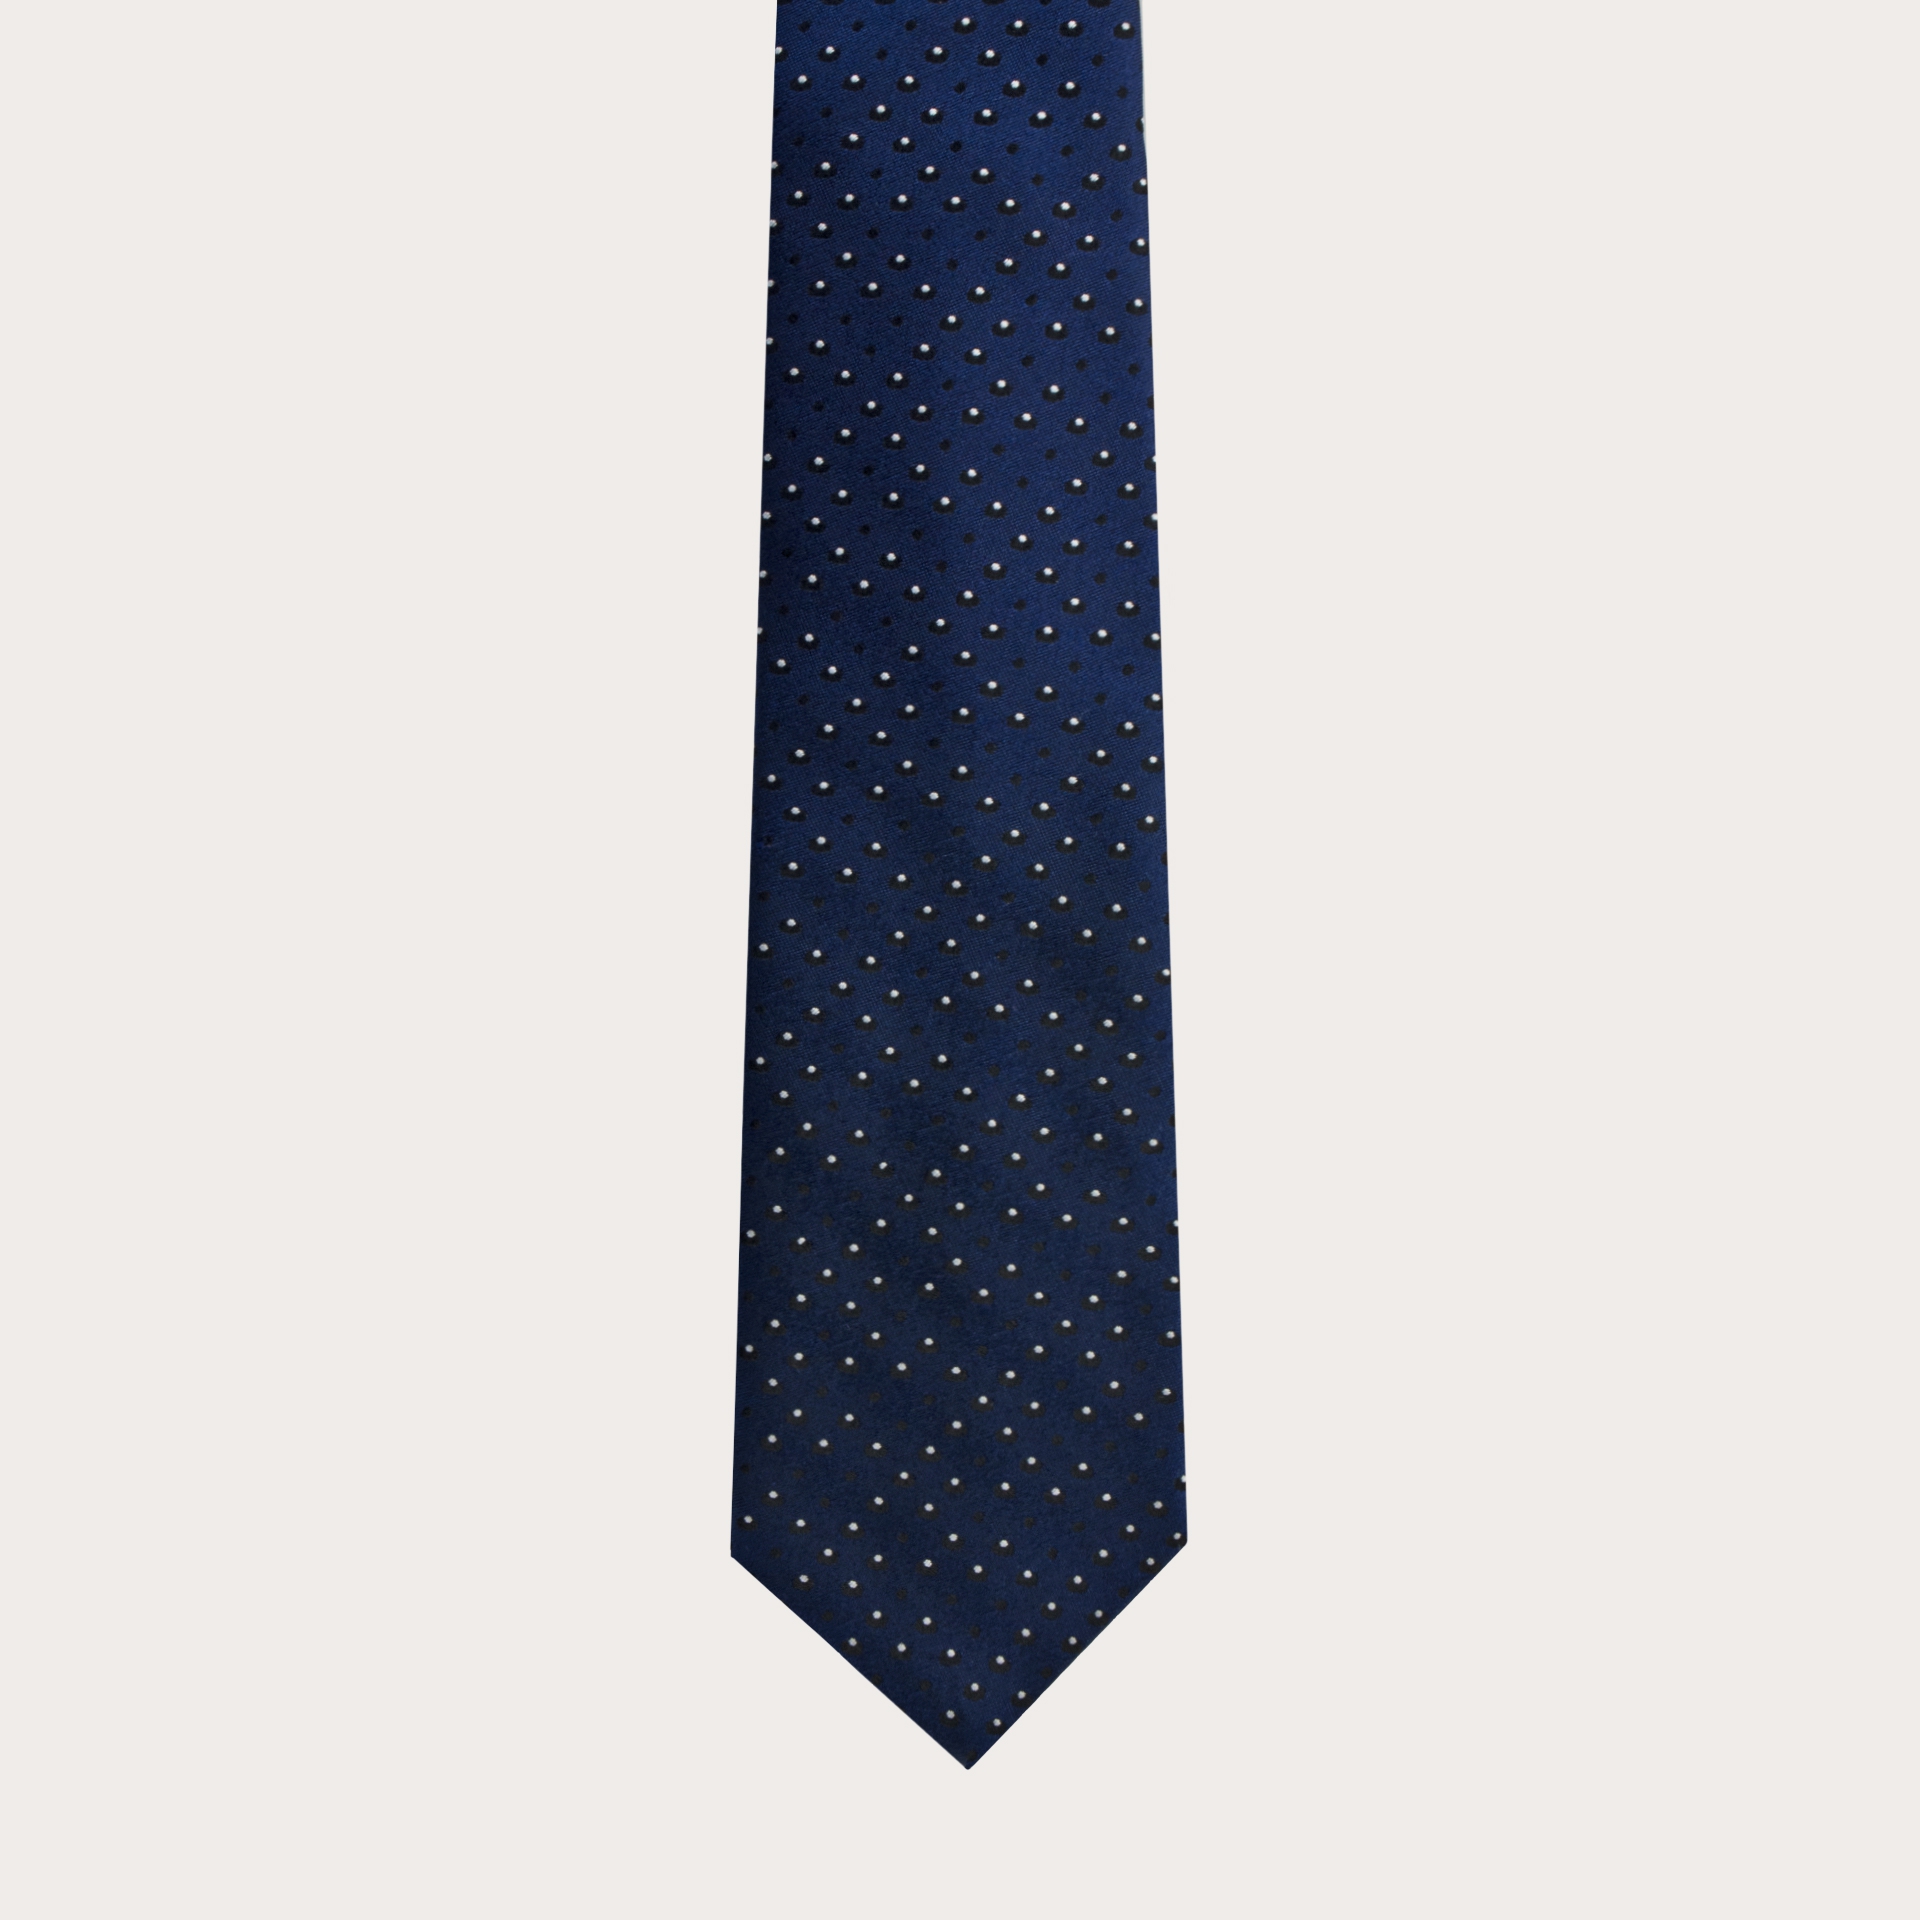 Cravate bleue faux pois en soie jacquard